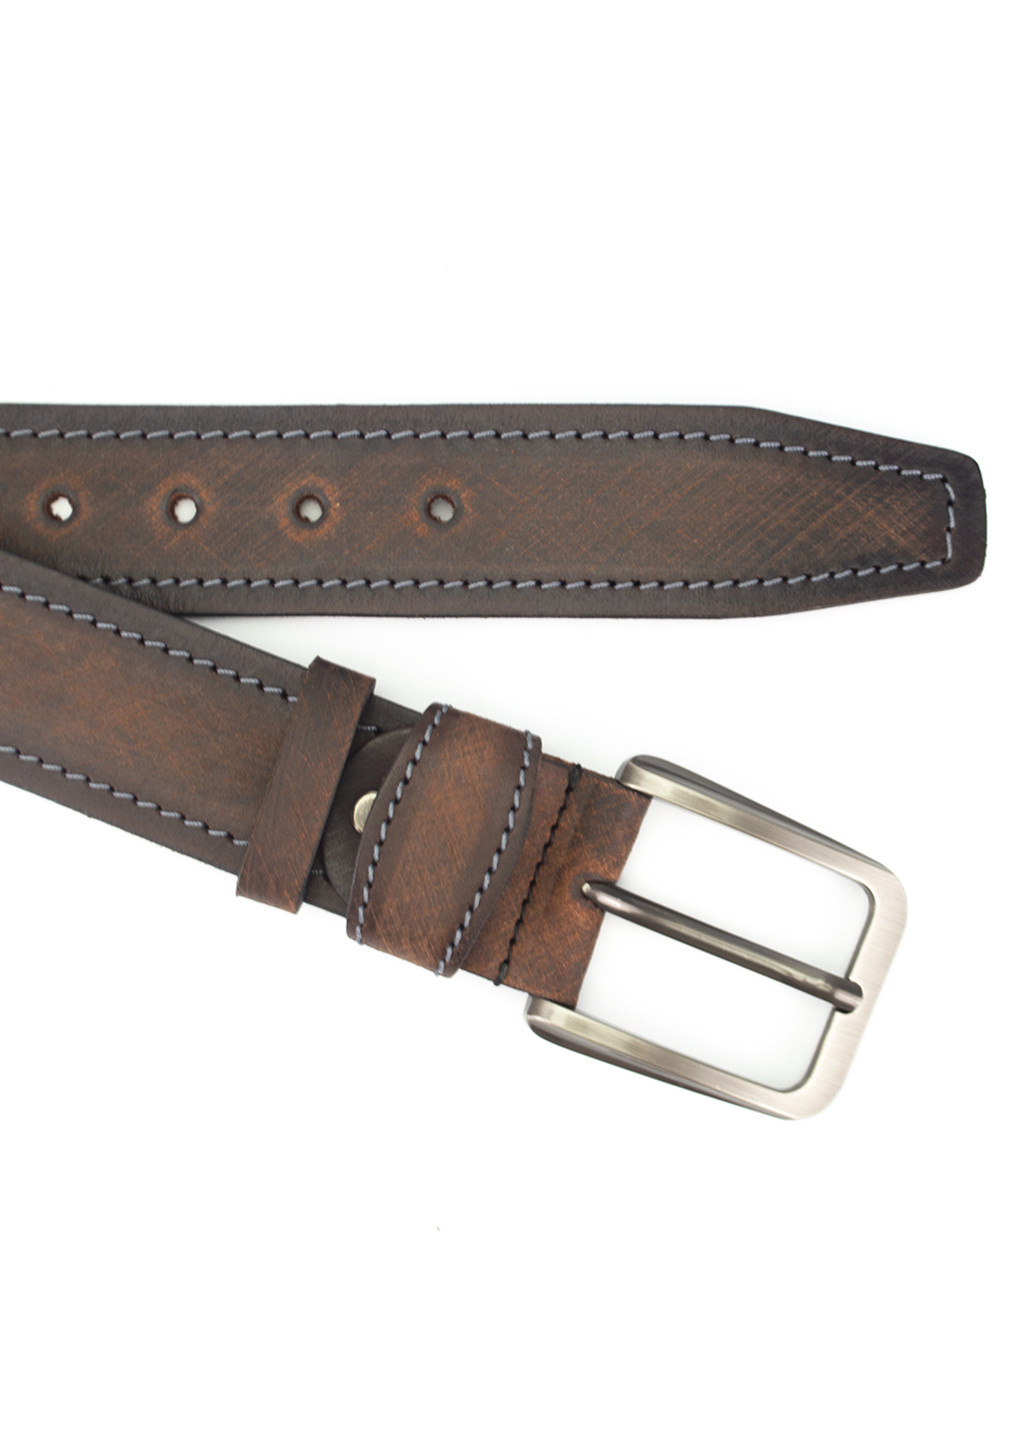 Ремень мужской кожаный под джинсы коричневый SF-4011 (130 см) SFIP (253700788)